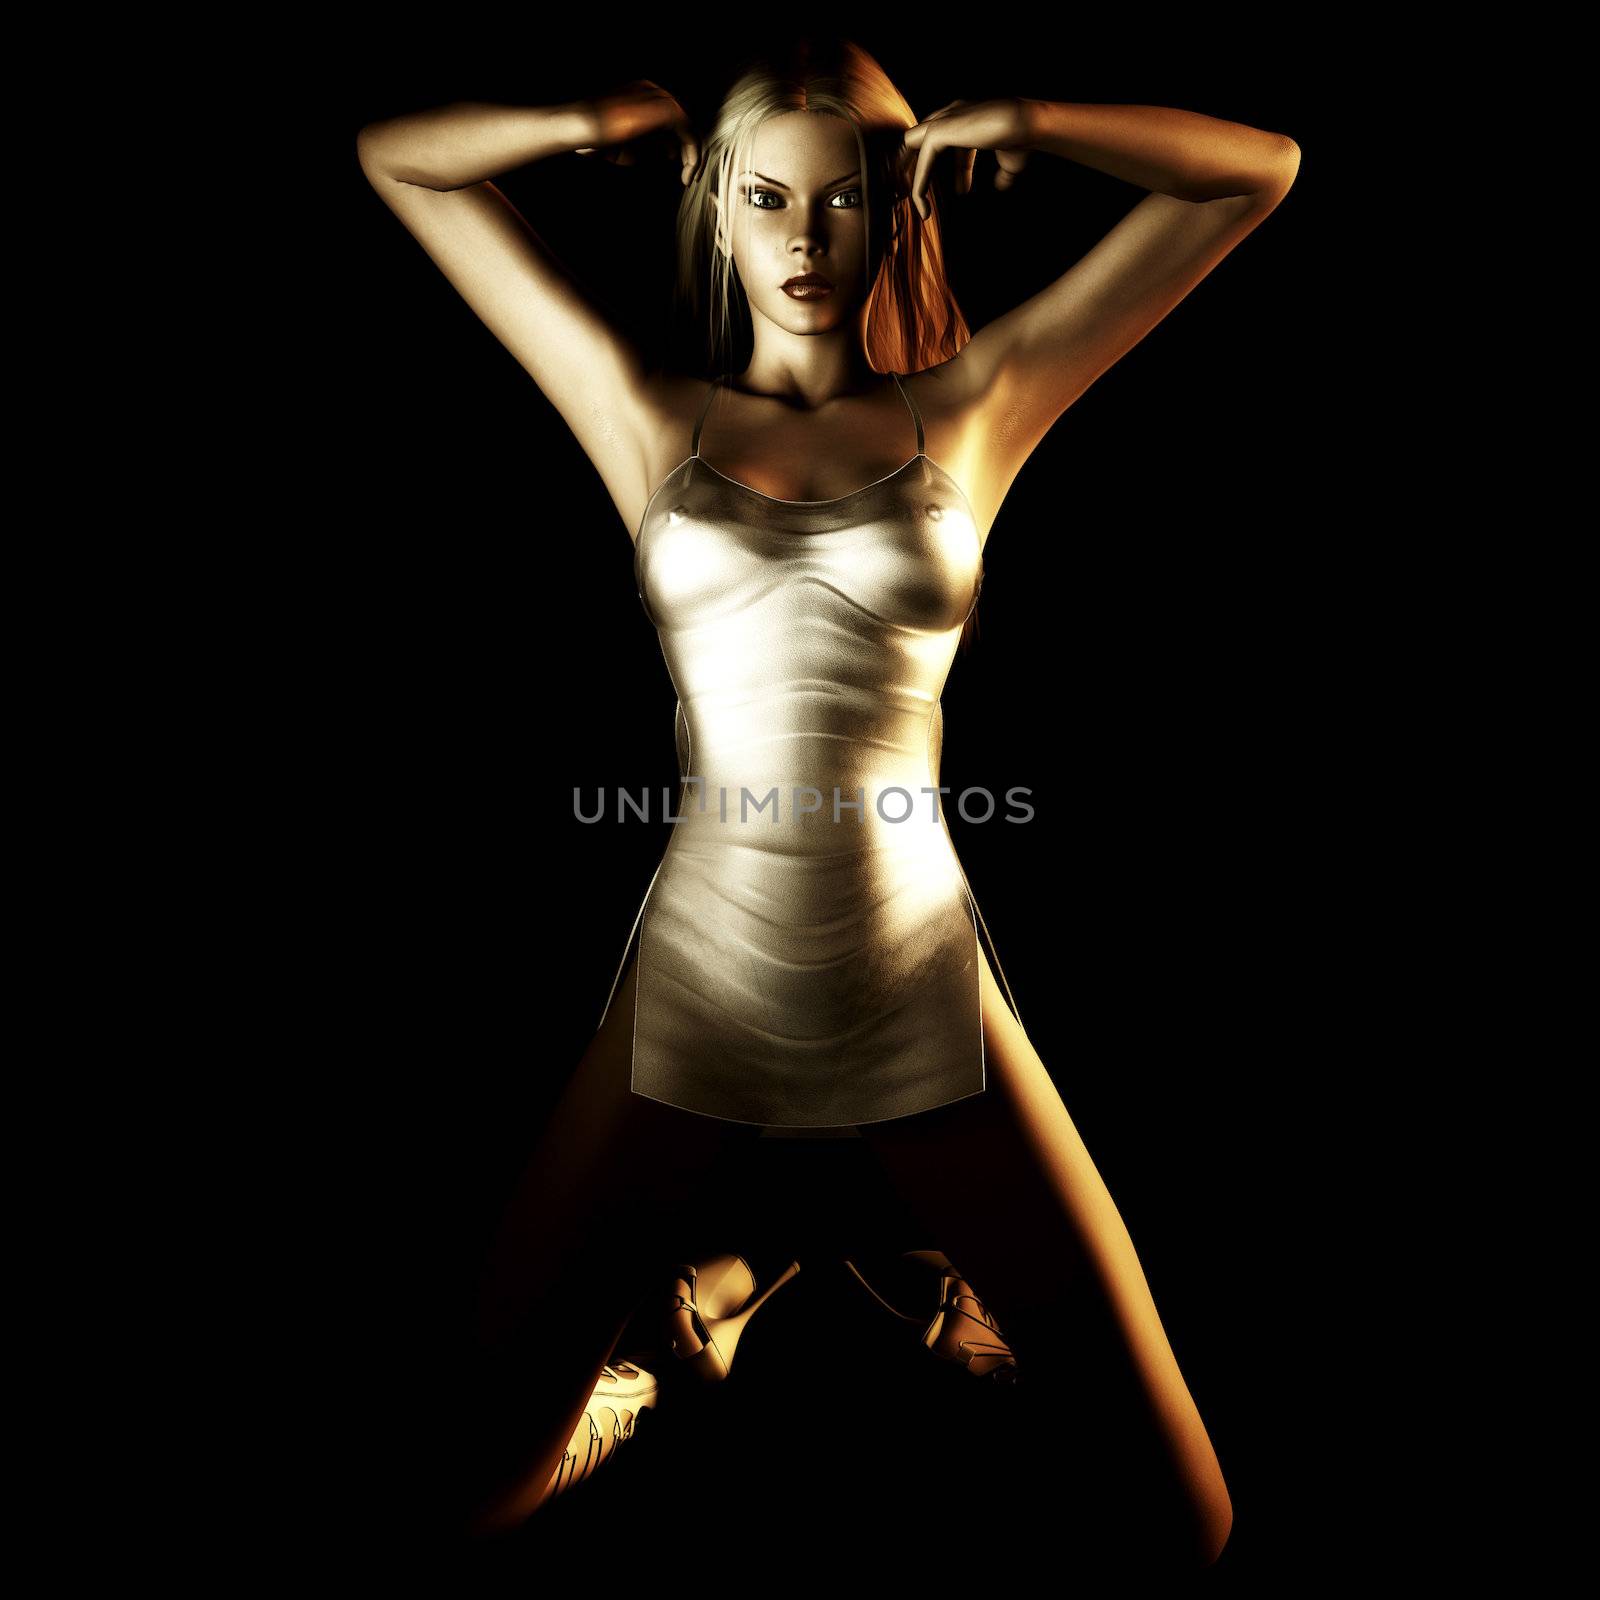 Digital rendering of a posing girl